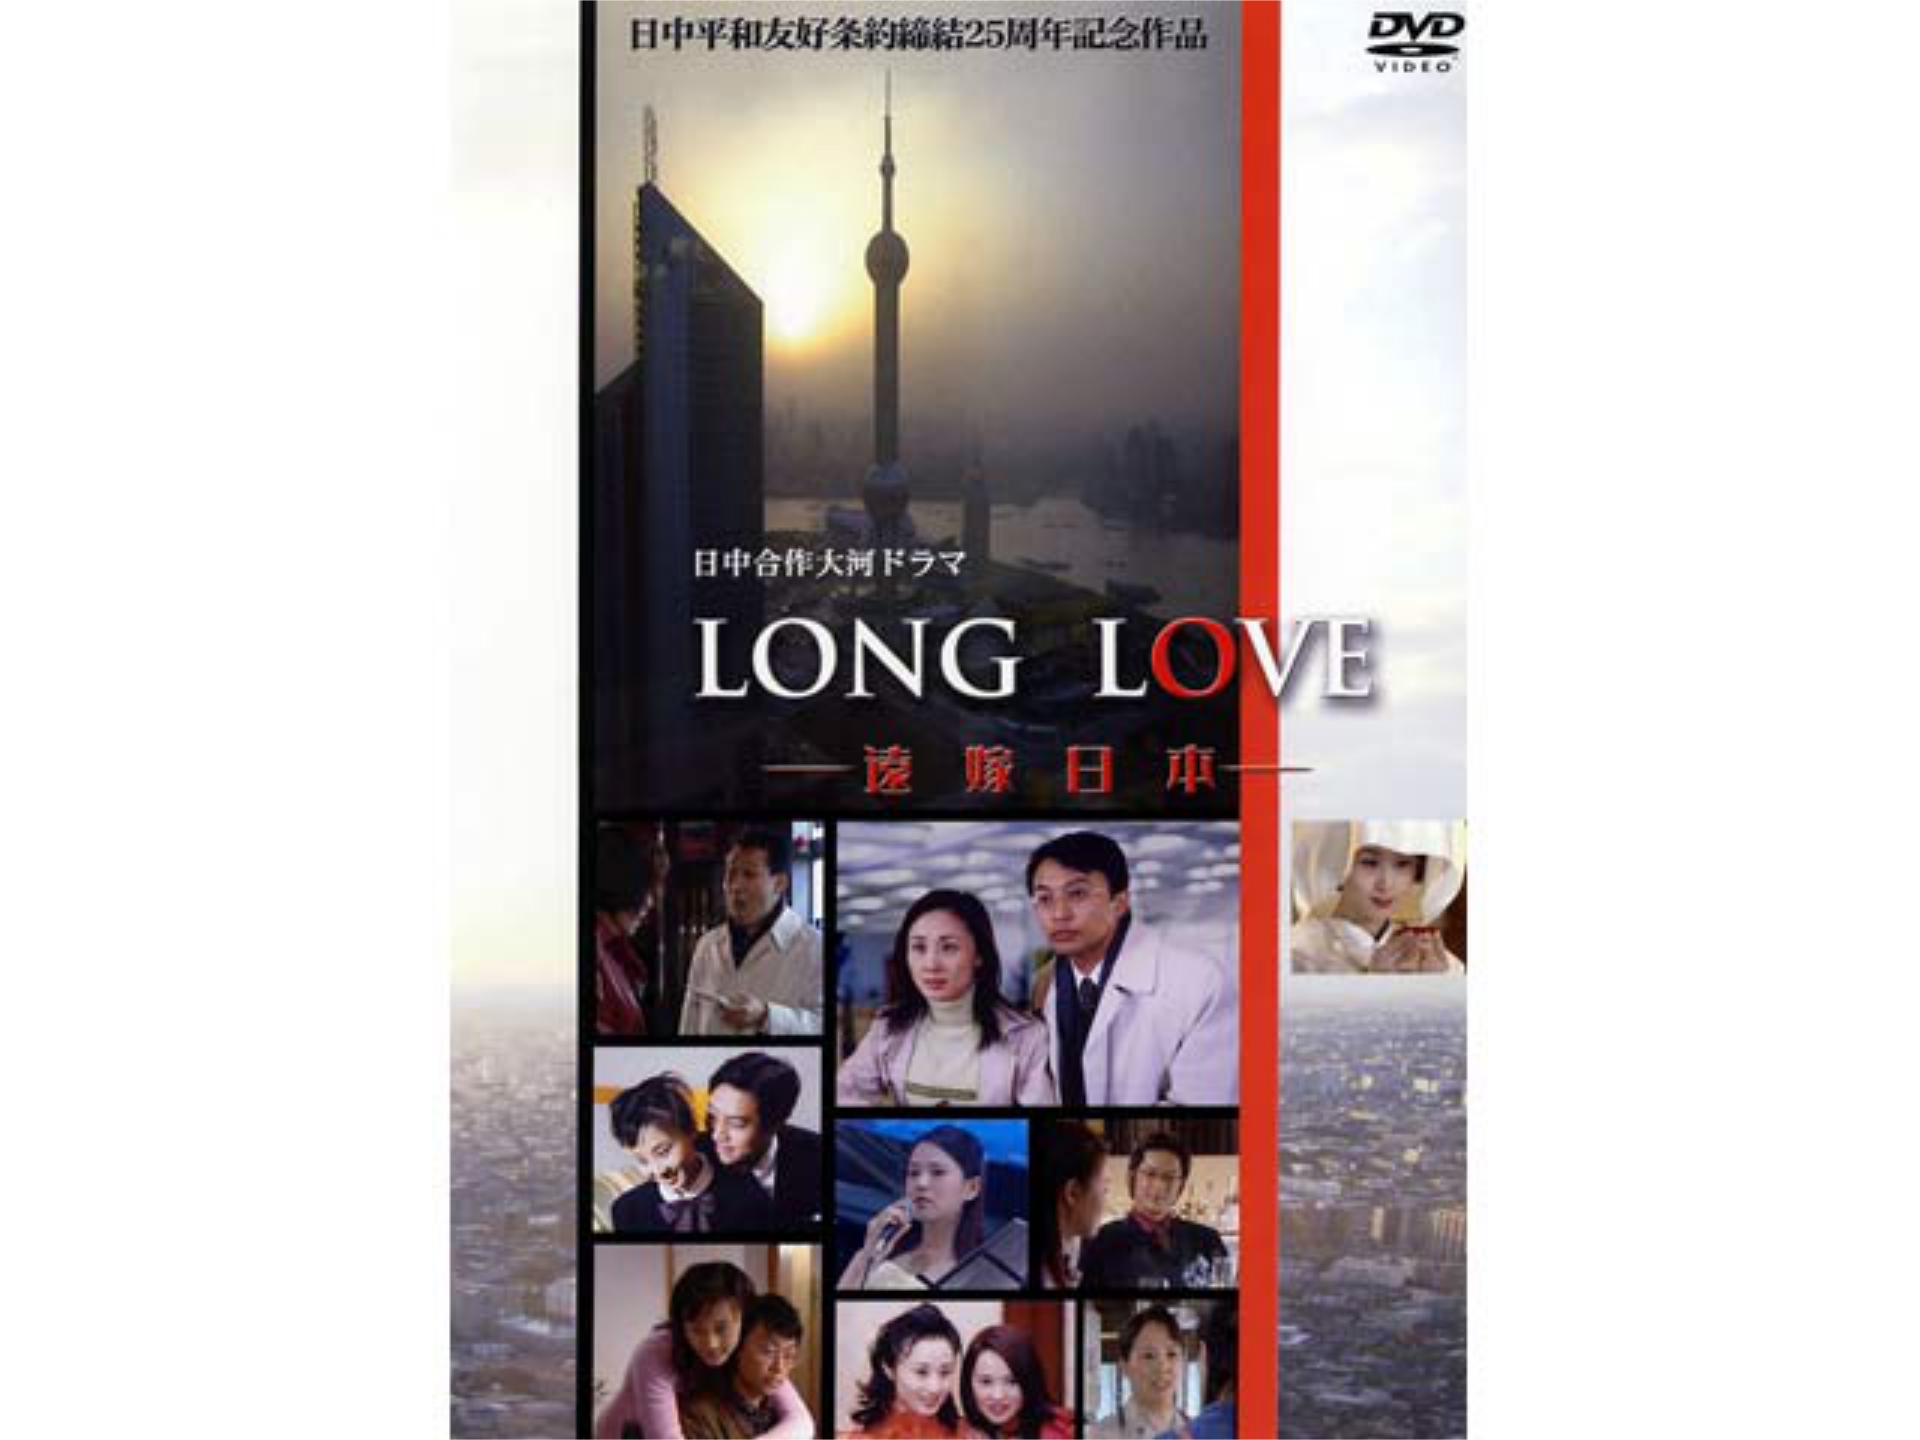 ドラマ Long Love 遠嫁日本 の動画 初月無料 動画配信サービスのビデオマーケット